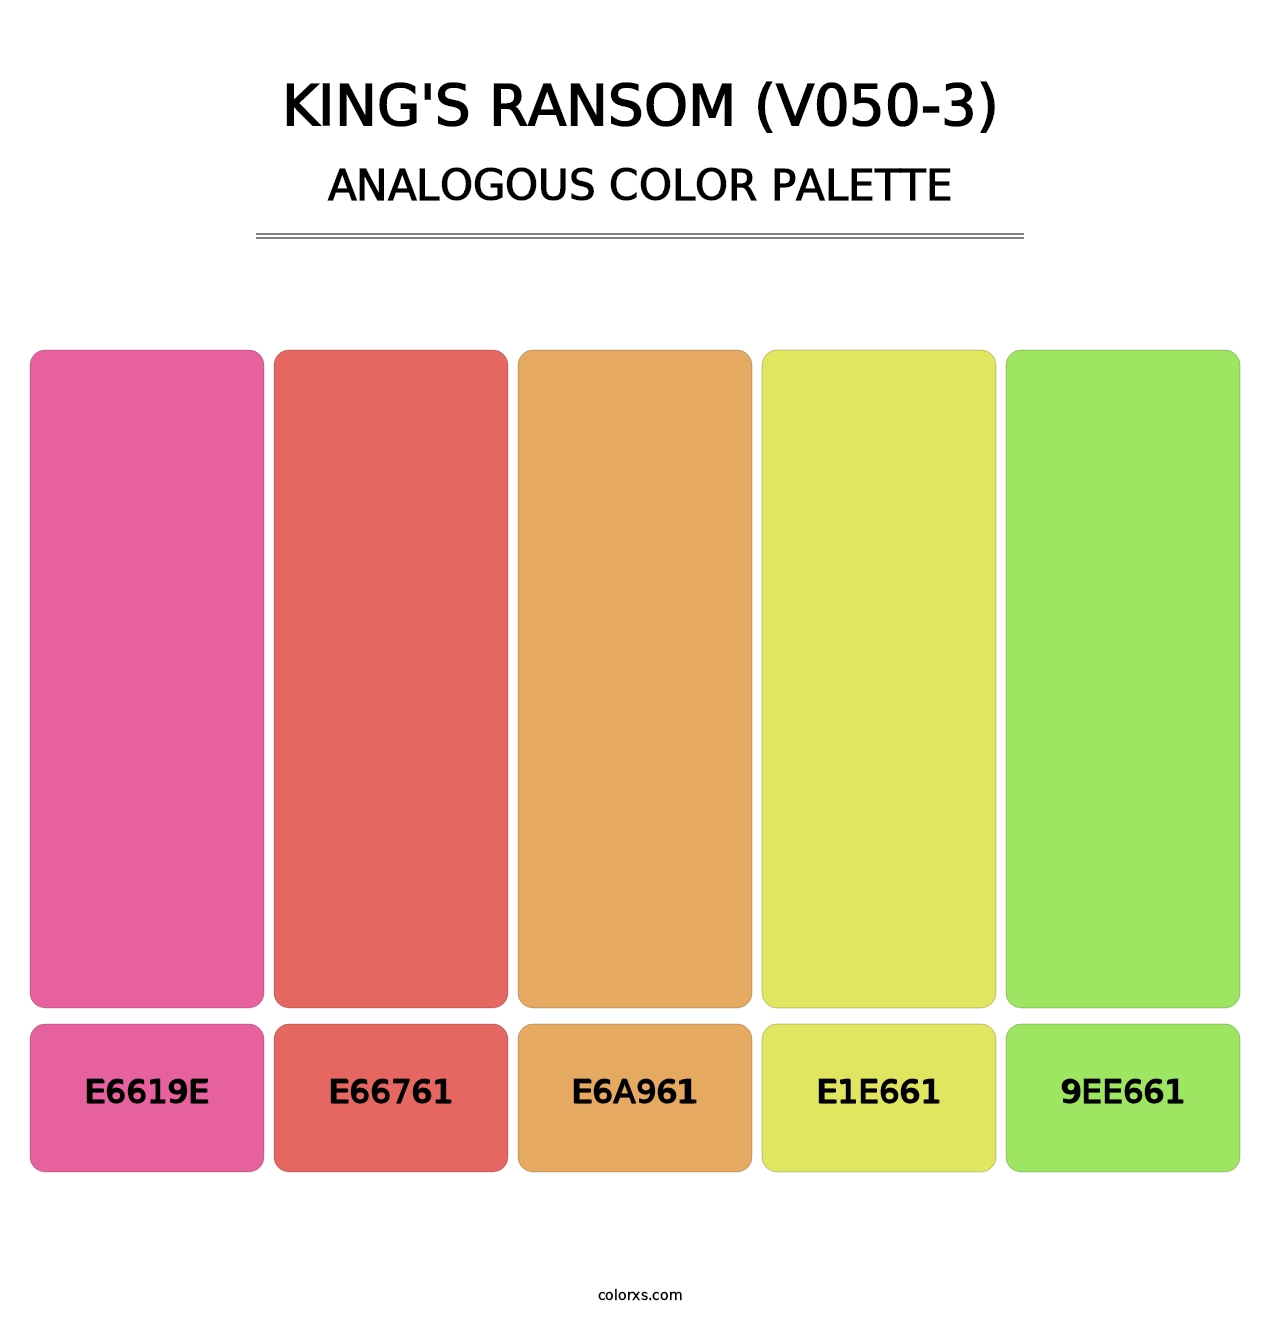 King's Ransom (V050-3) - Analogous Color Palette